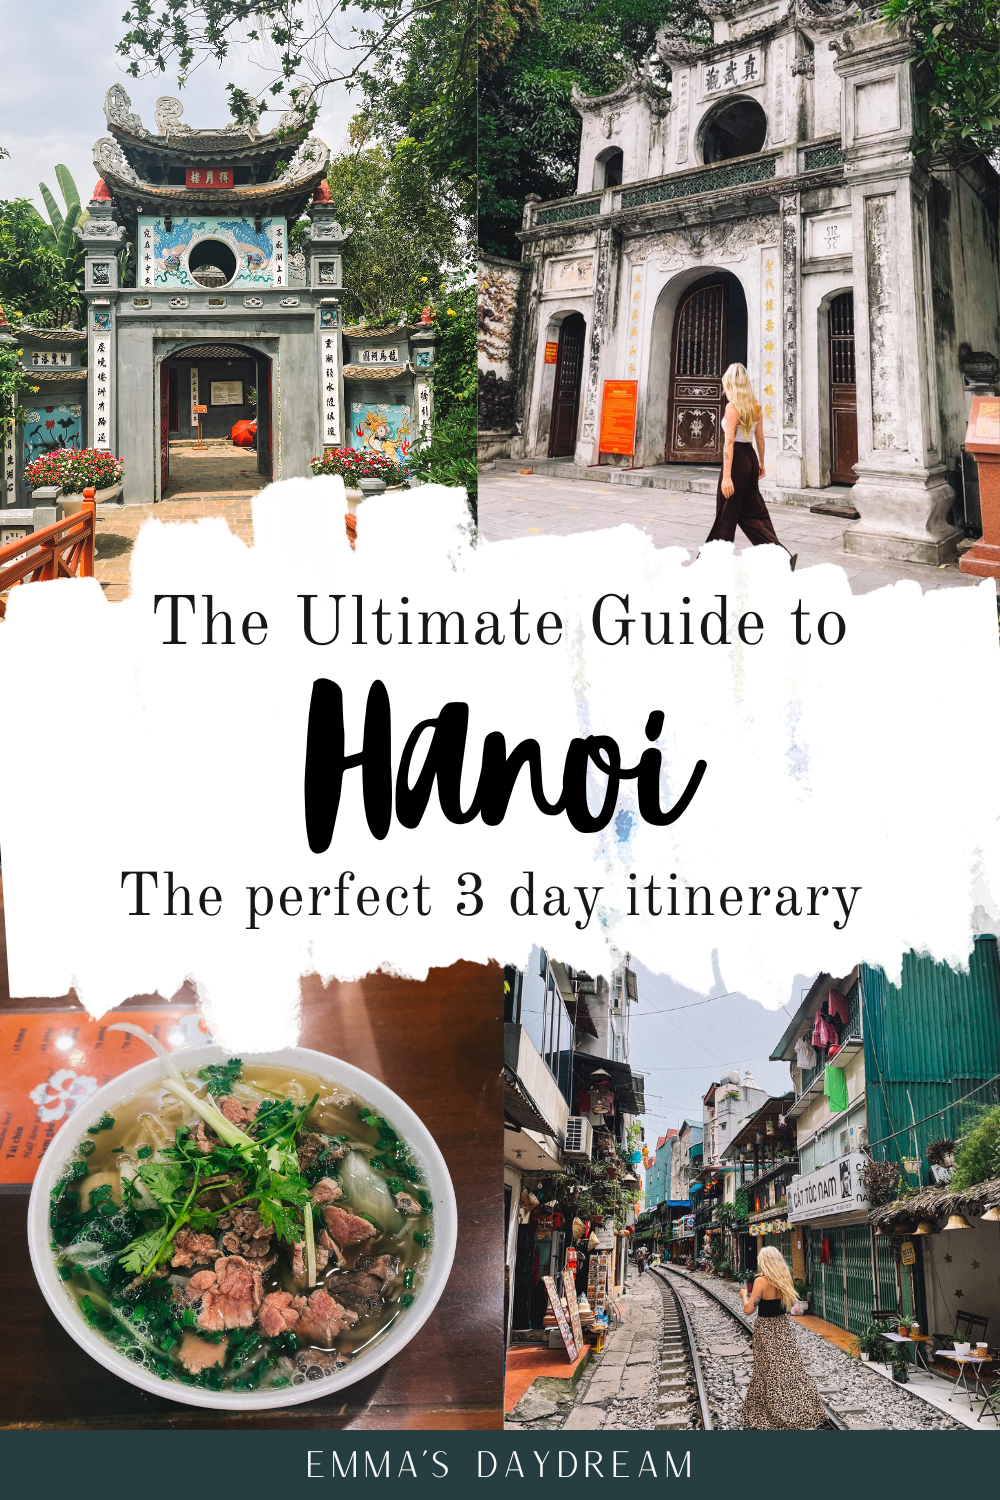 3 Day Hanoi Itinerary 